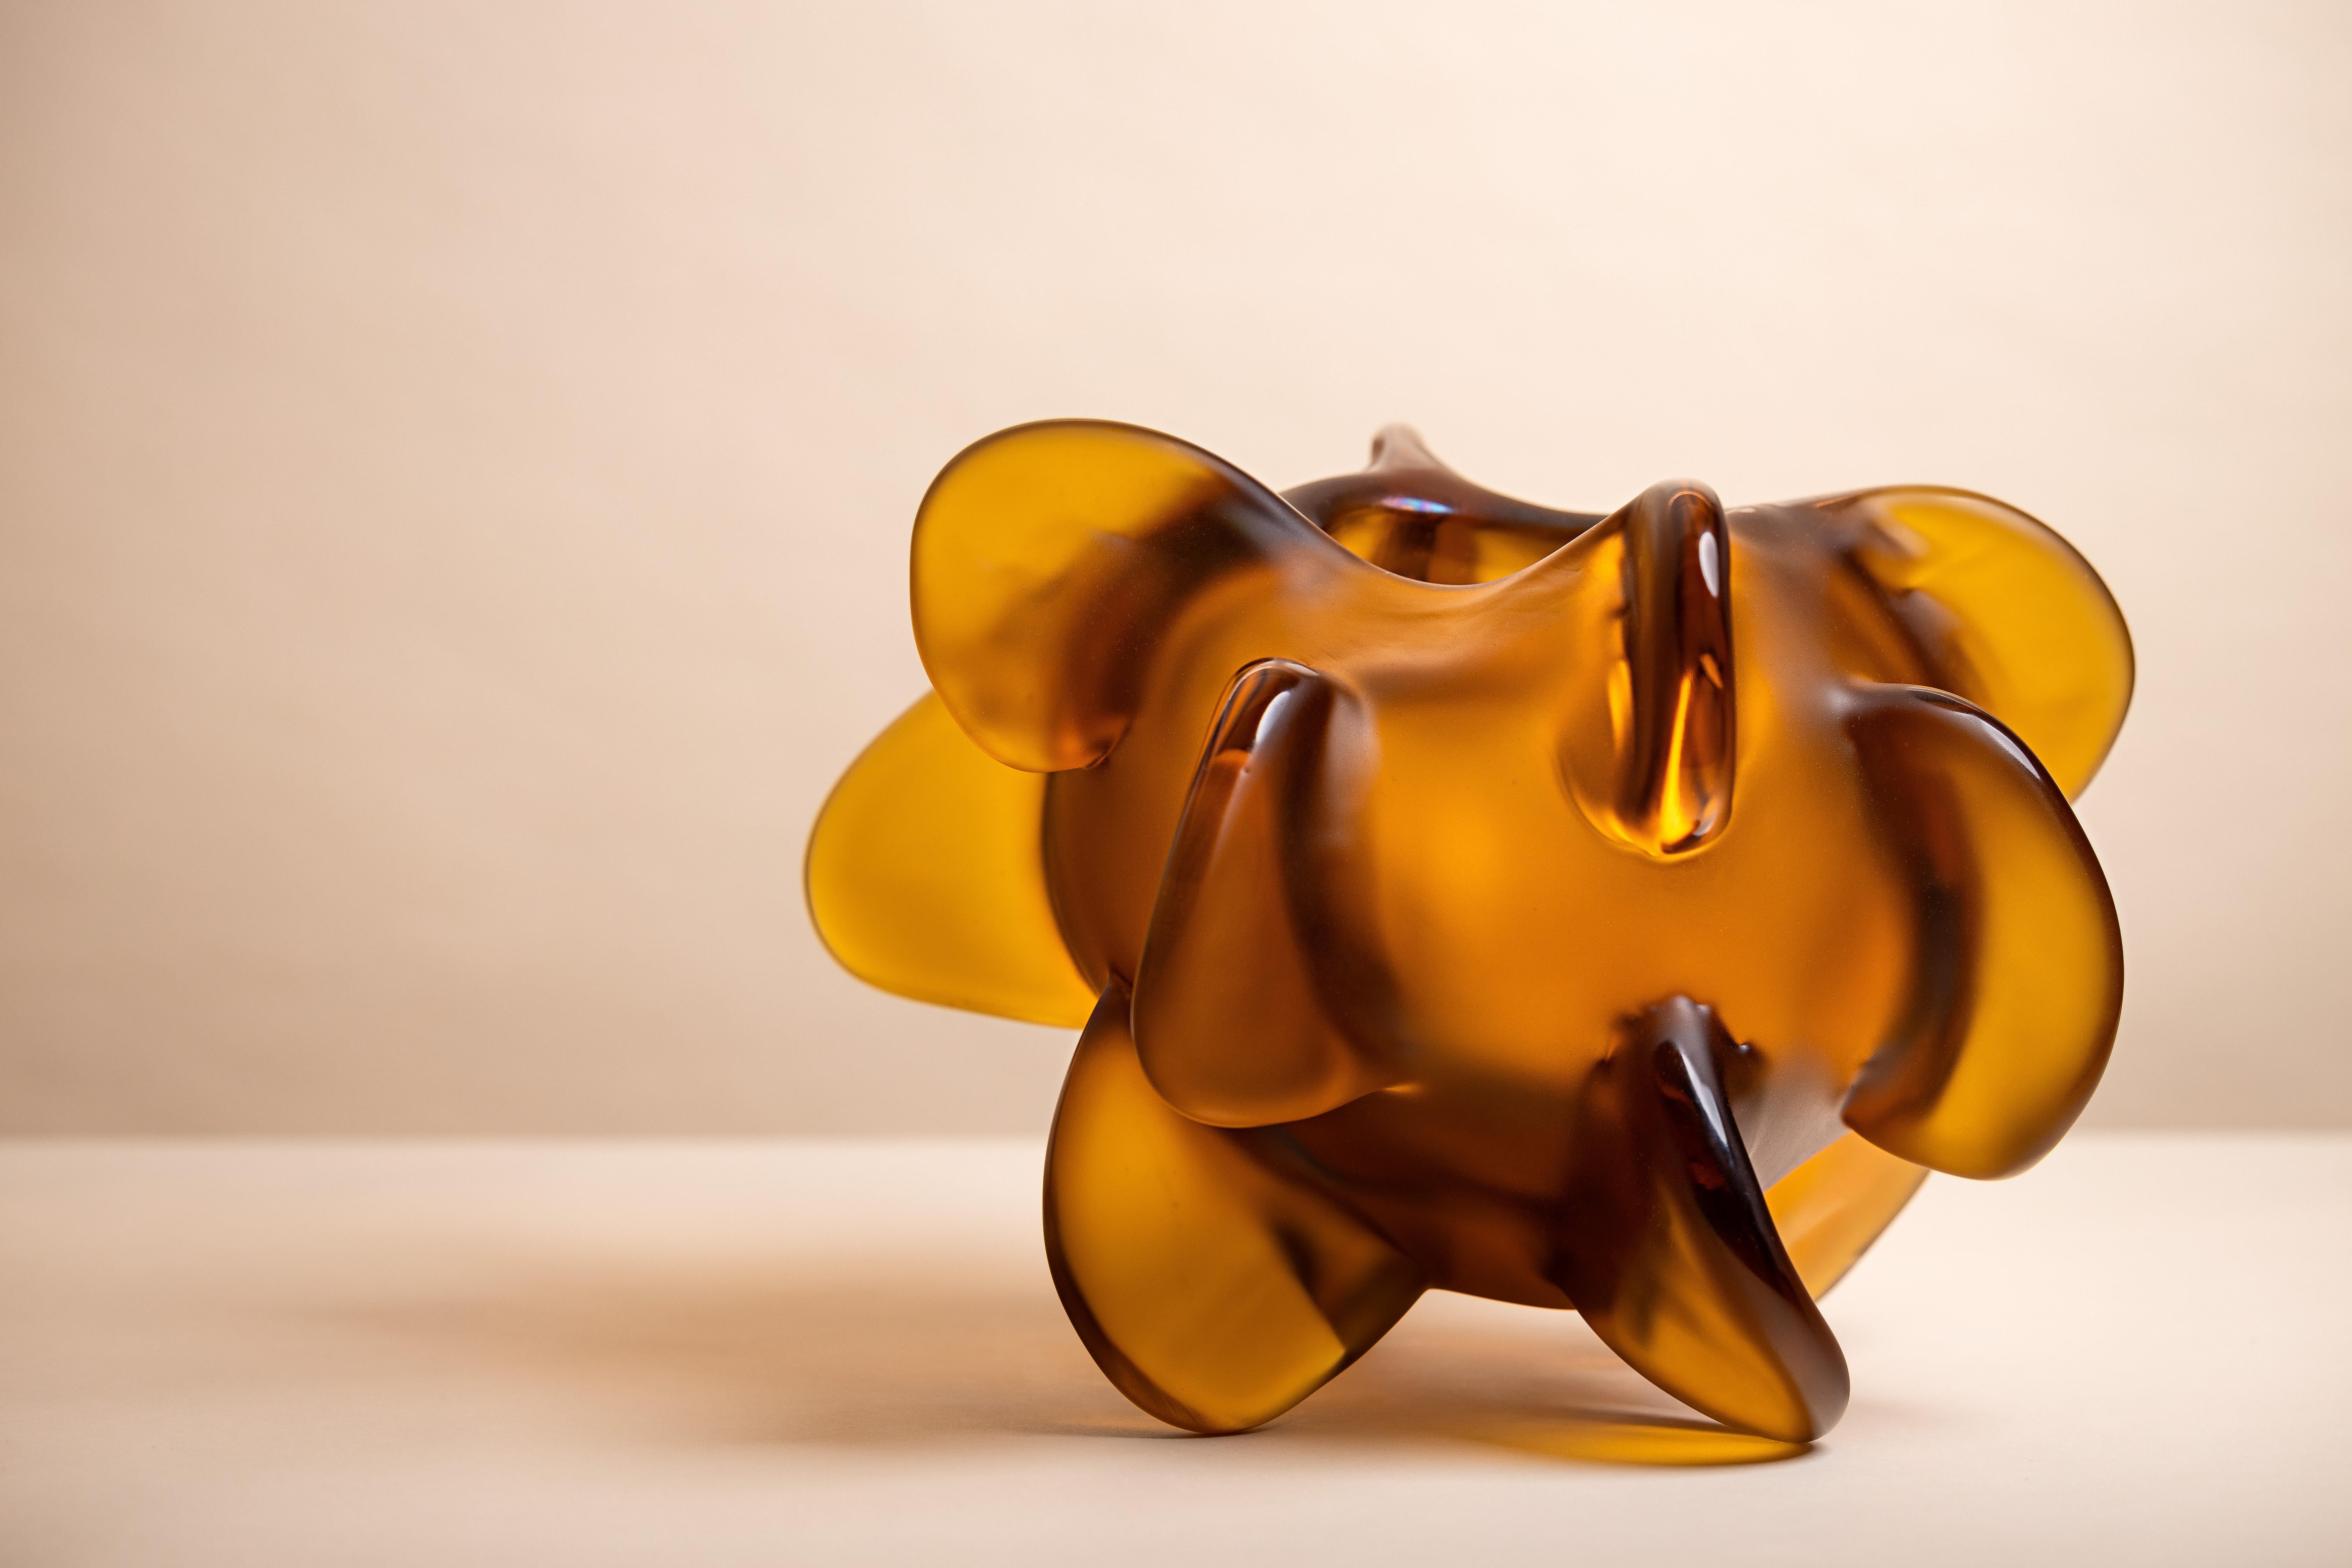 Anémone se compose de pièces uniques en ambre, or, bordeaux foncé et hortensia, exprimant la fascination de Michela Cattai pour la nature dans toutes ses formes et manifestations imprévisibles. Chaque pièce a été fabriquée à Murano, selon la